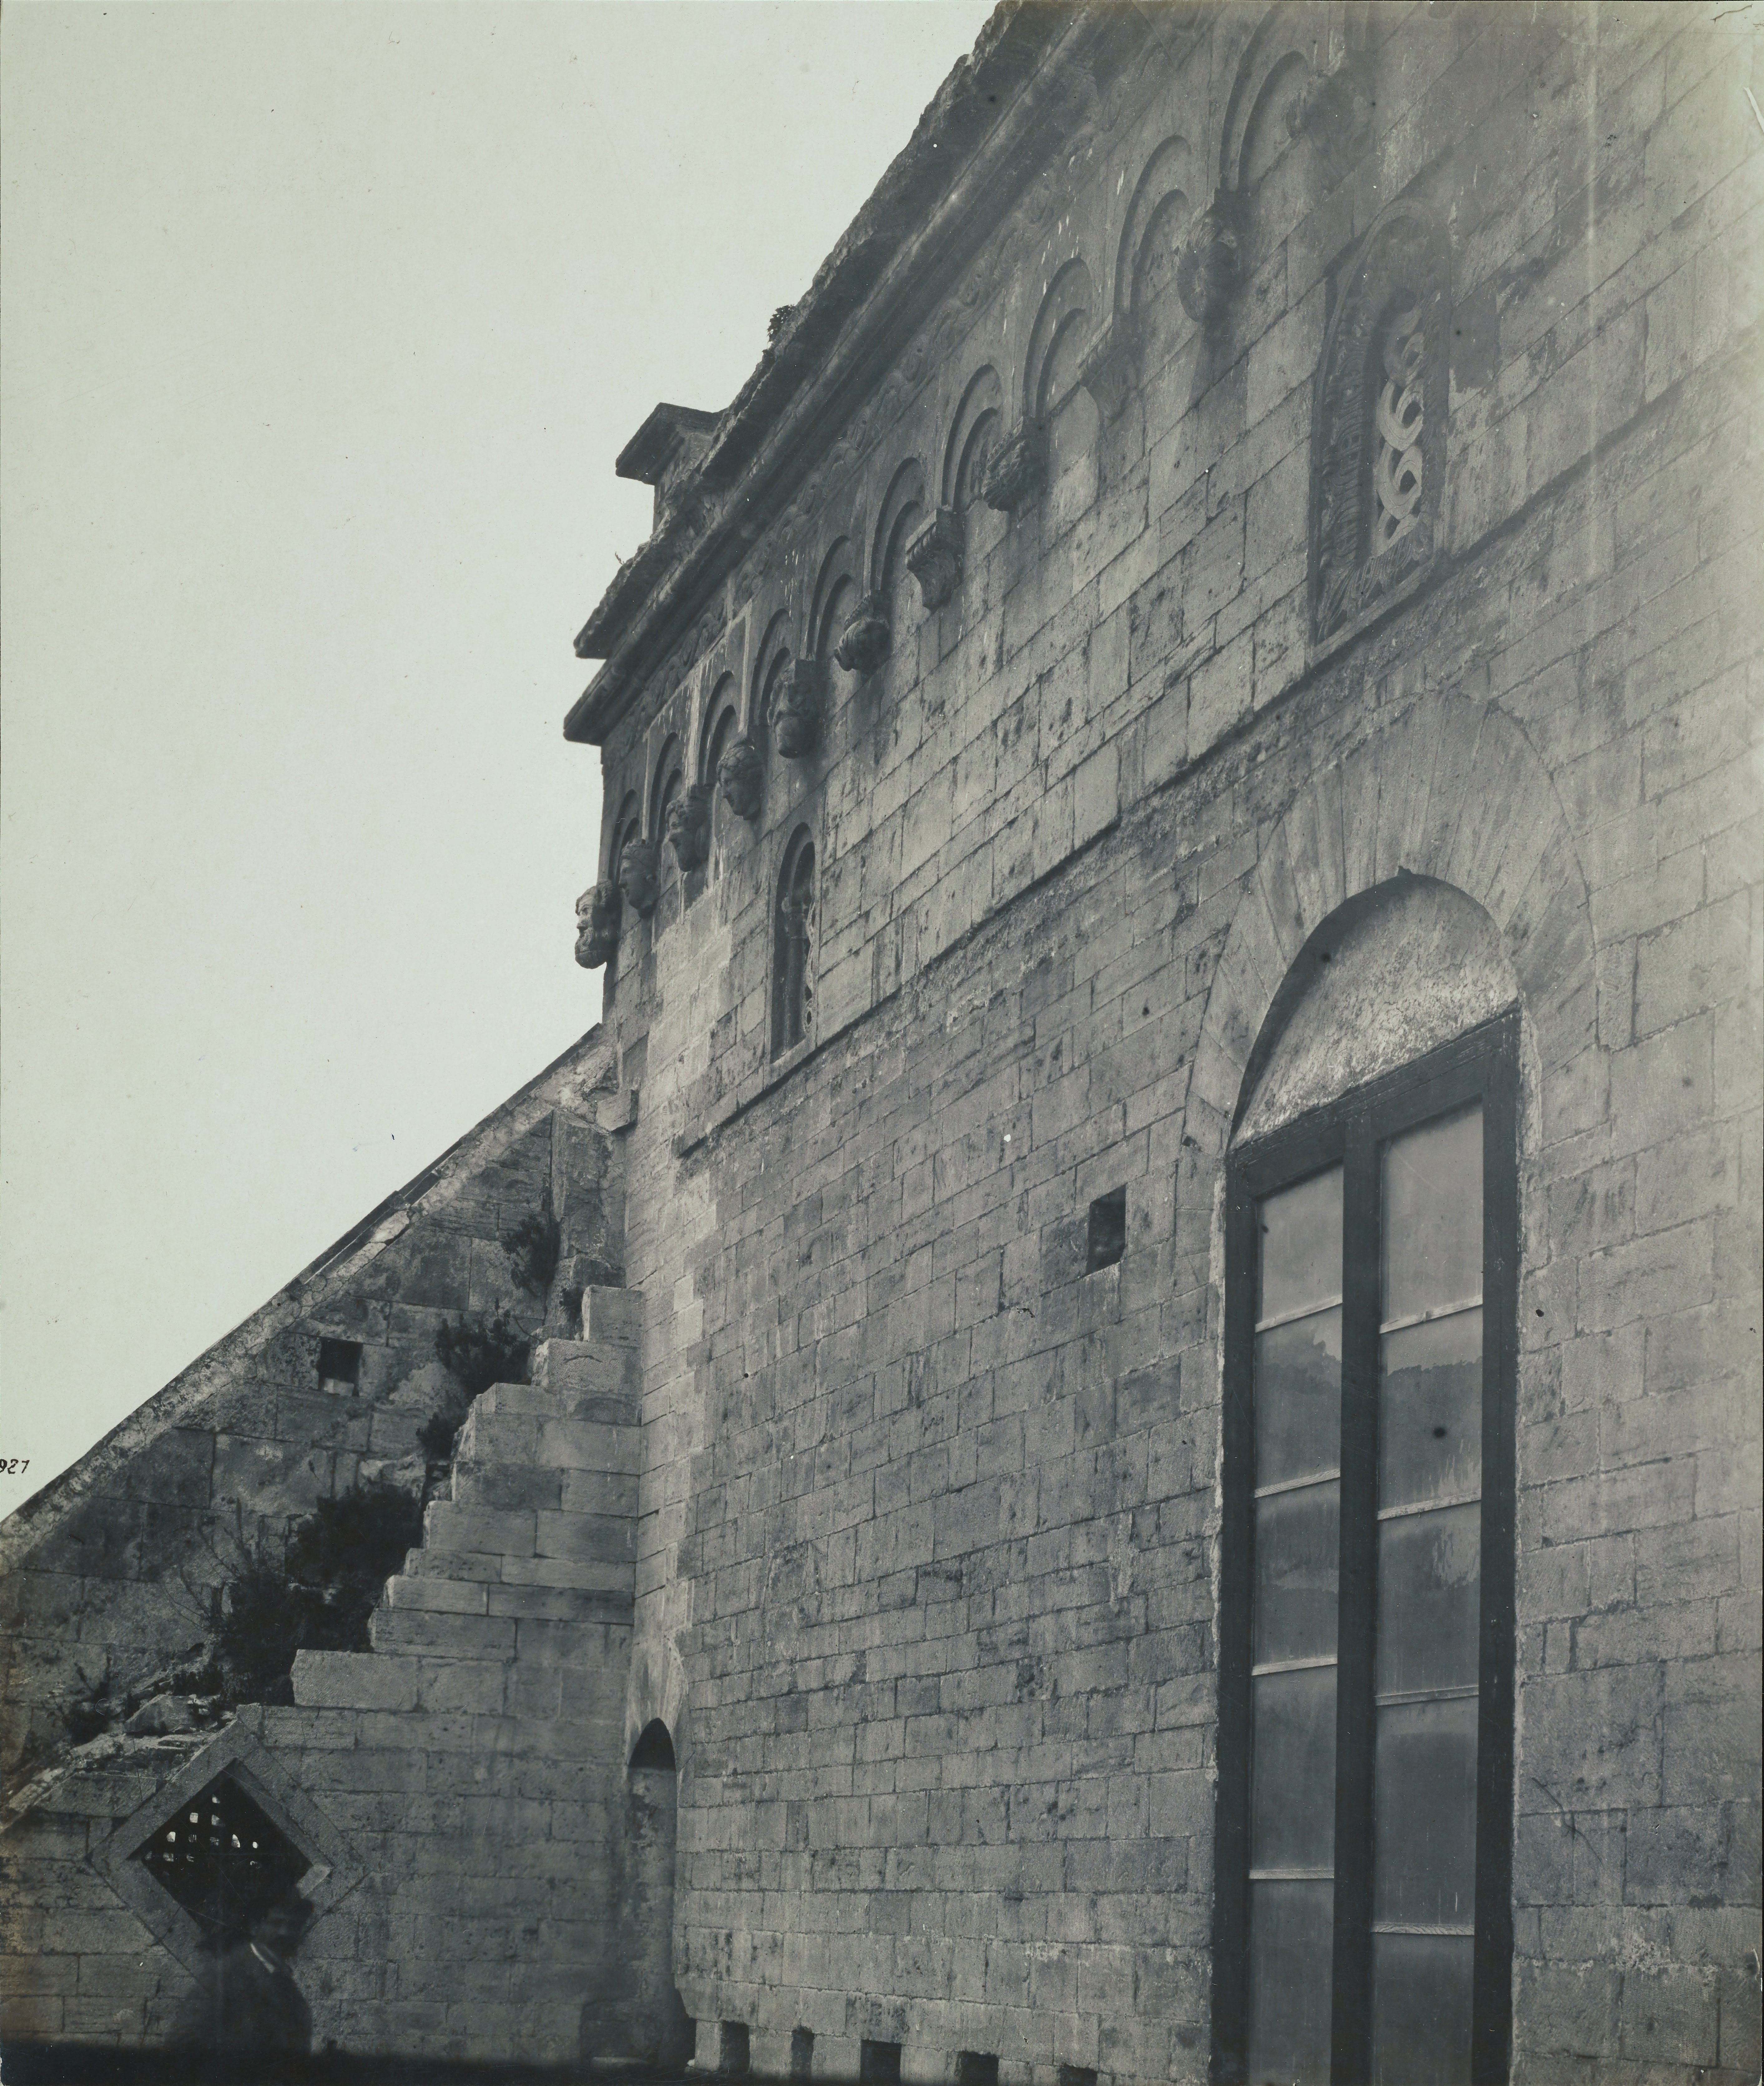 Fotografo non identificato, Ruvo di Puglia - Cattedrale S. Maria Assunta, fianco, 1926-1950, gelatina ai sali d'argento/carta, MPI6091659